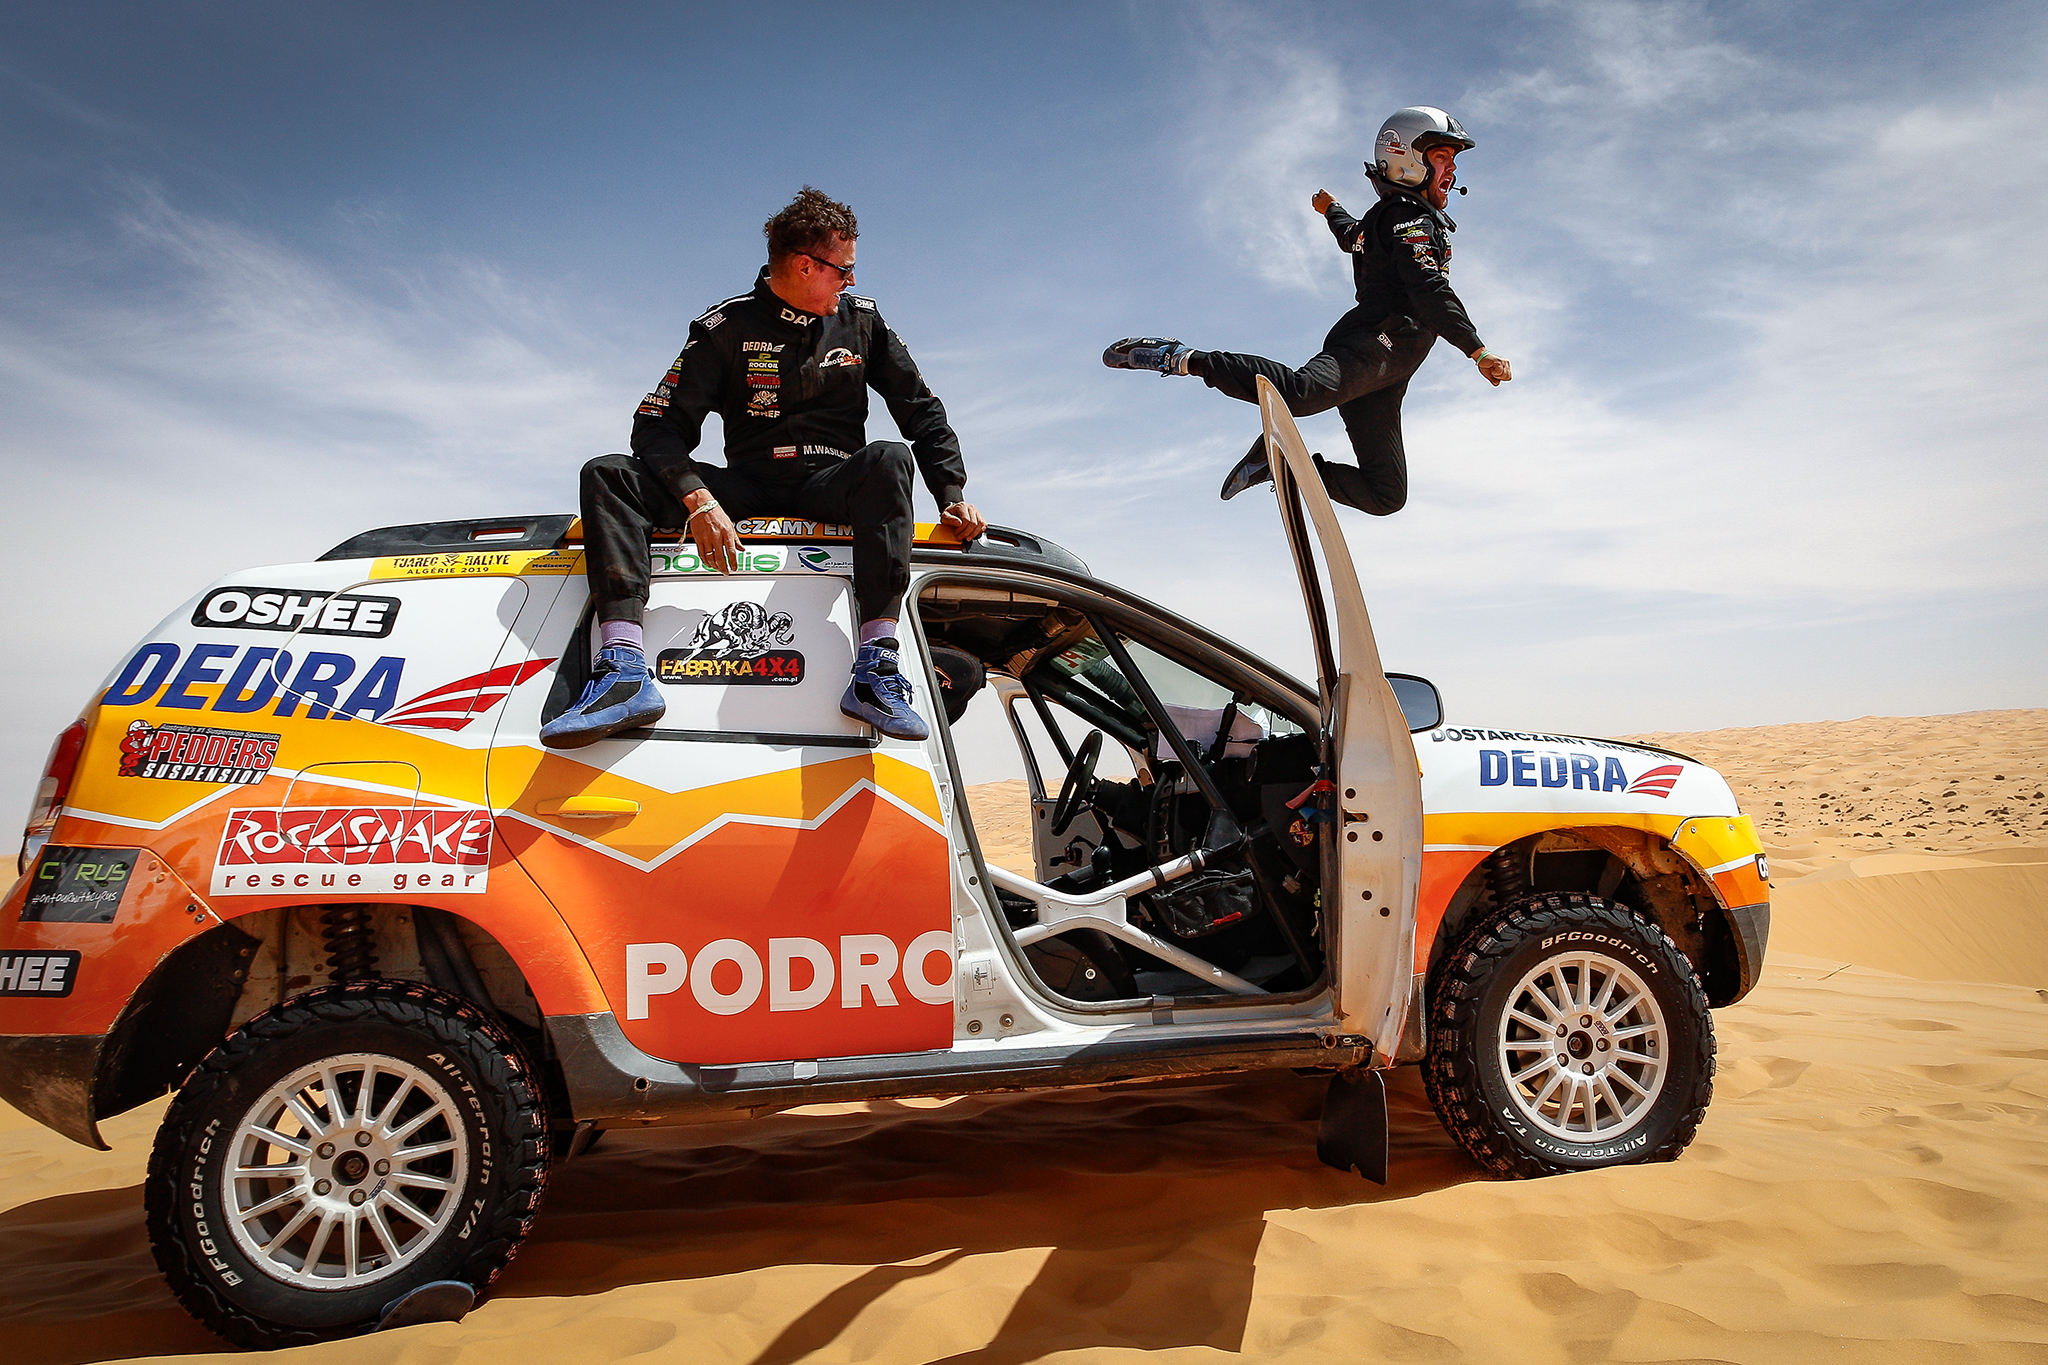 Tuareg Rallye 2019 - Algeria...